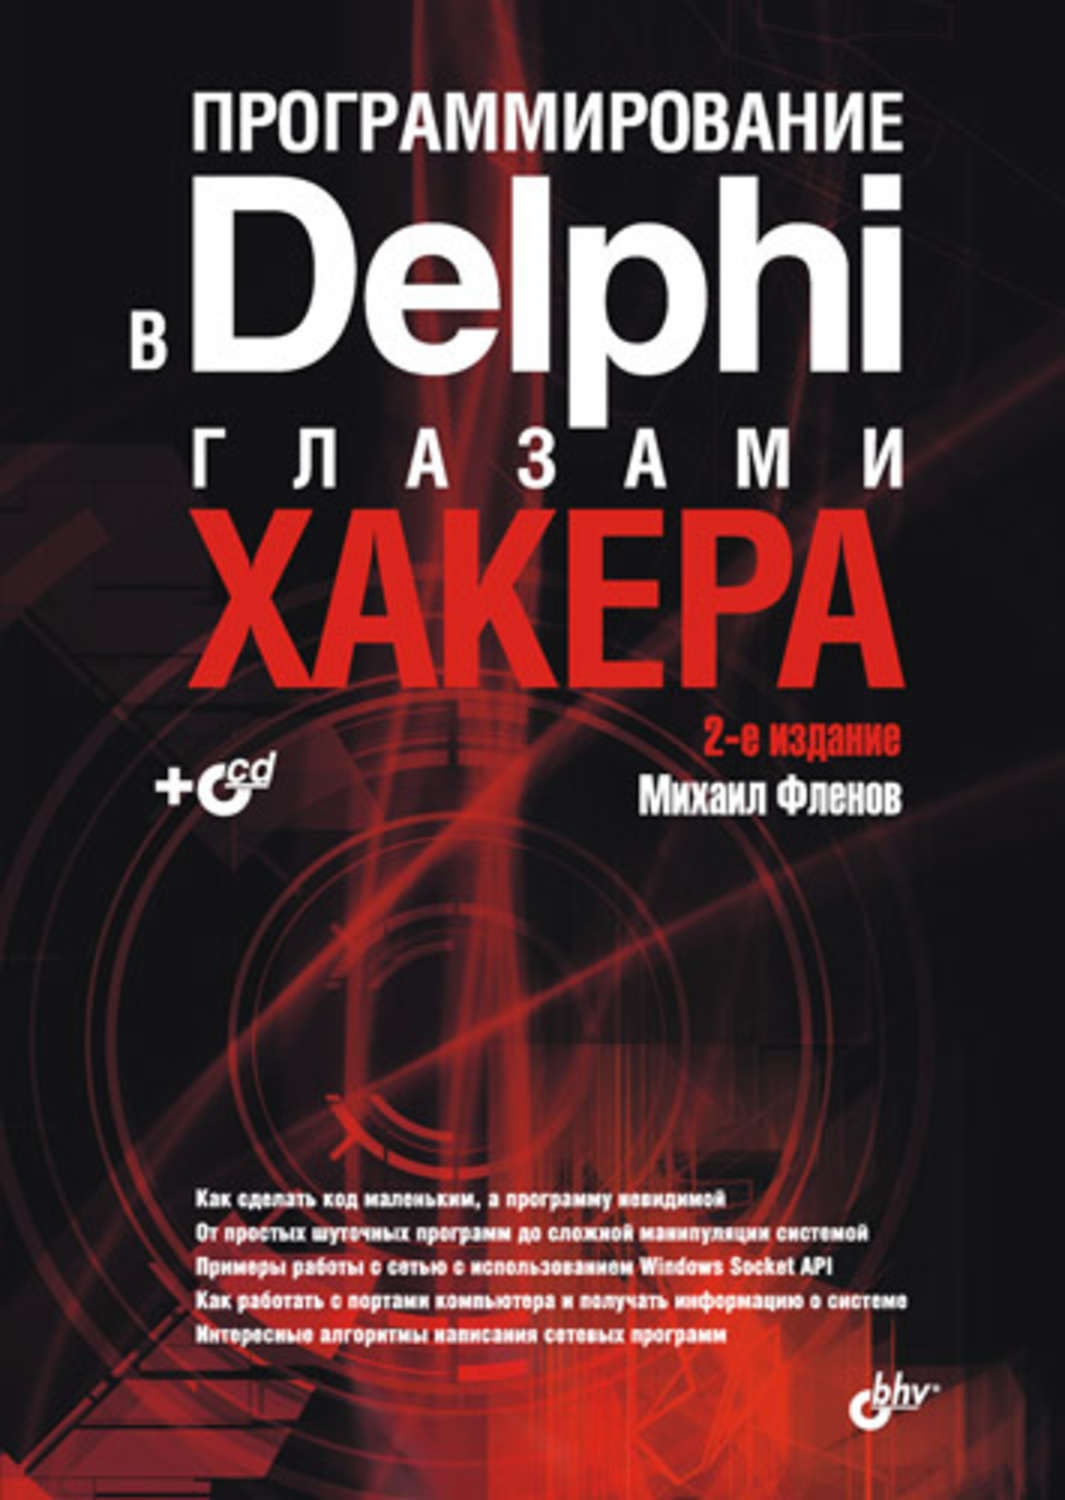 Книги про программирование. Книги Михаила Фленова "программирование в DELPHI глазами хакера".. Учебник по программированию. Программирование книги хакинг.